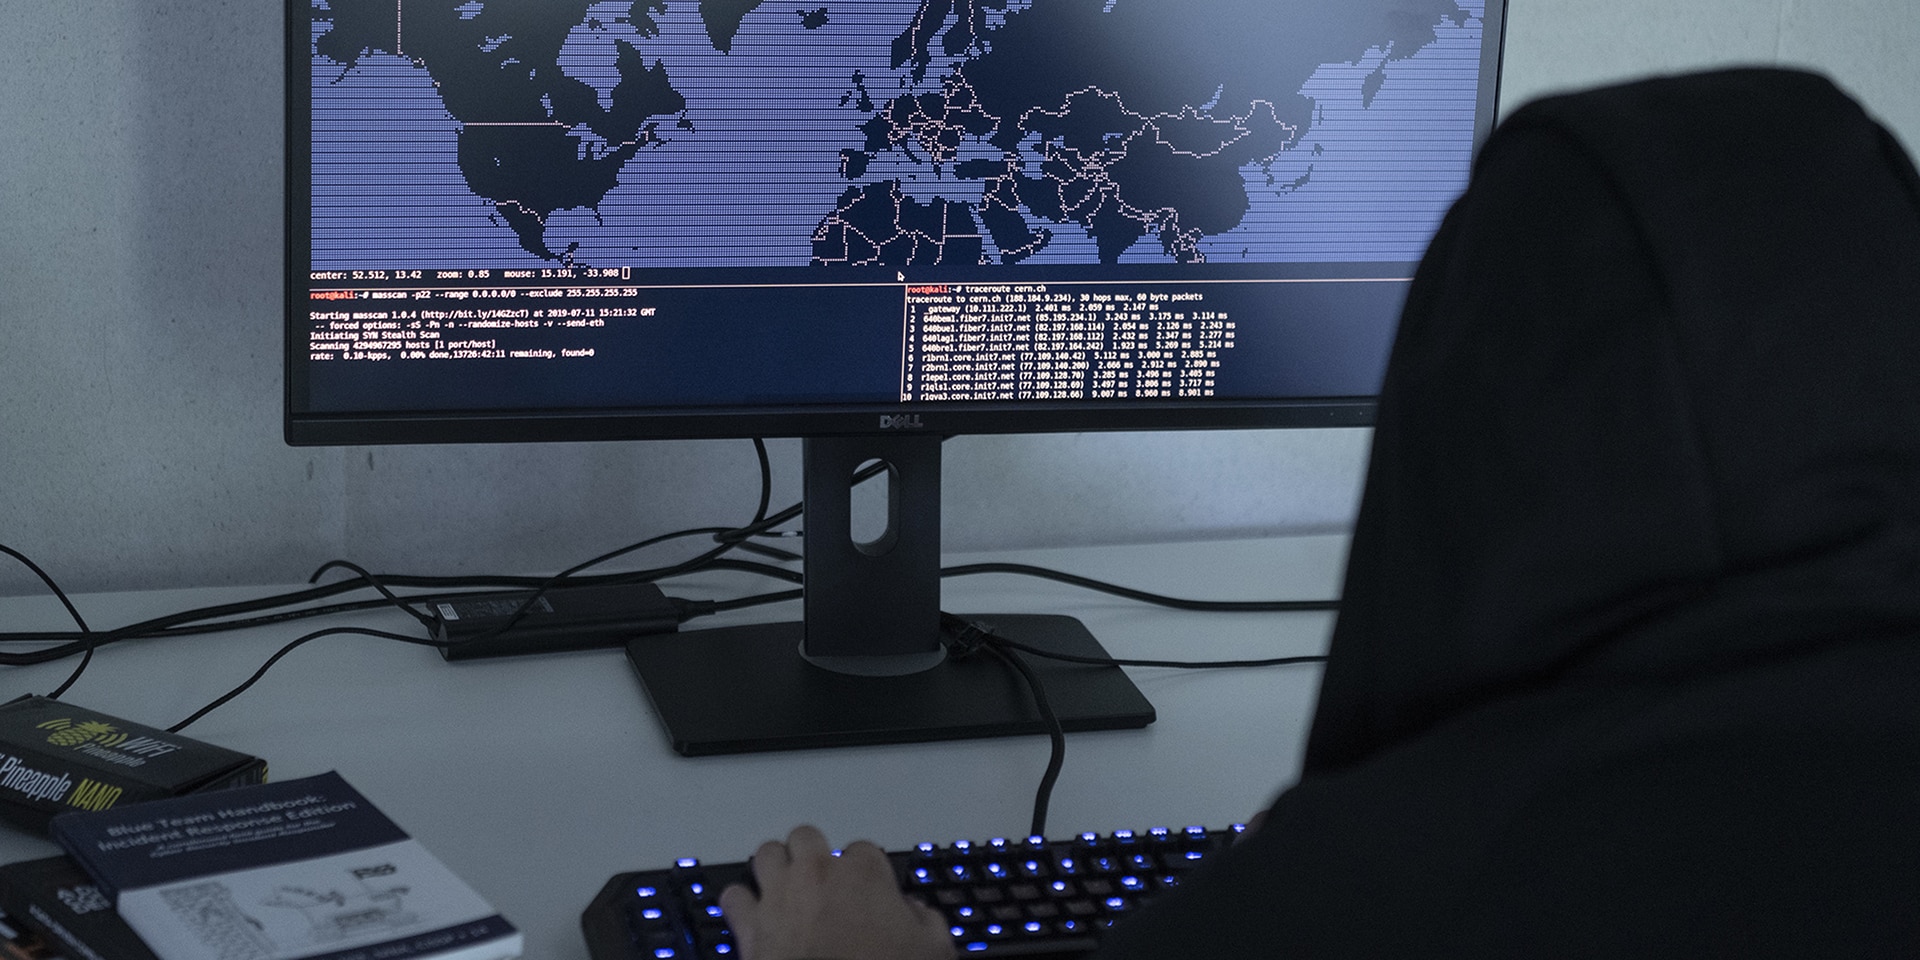 Un uomo con un cappuccio in testa, simbolo della cybercriminalità, siede davanti a un computer in cui si vede una carta del mondo e modifica codici di programmazione.